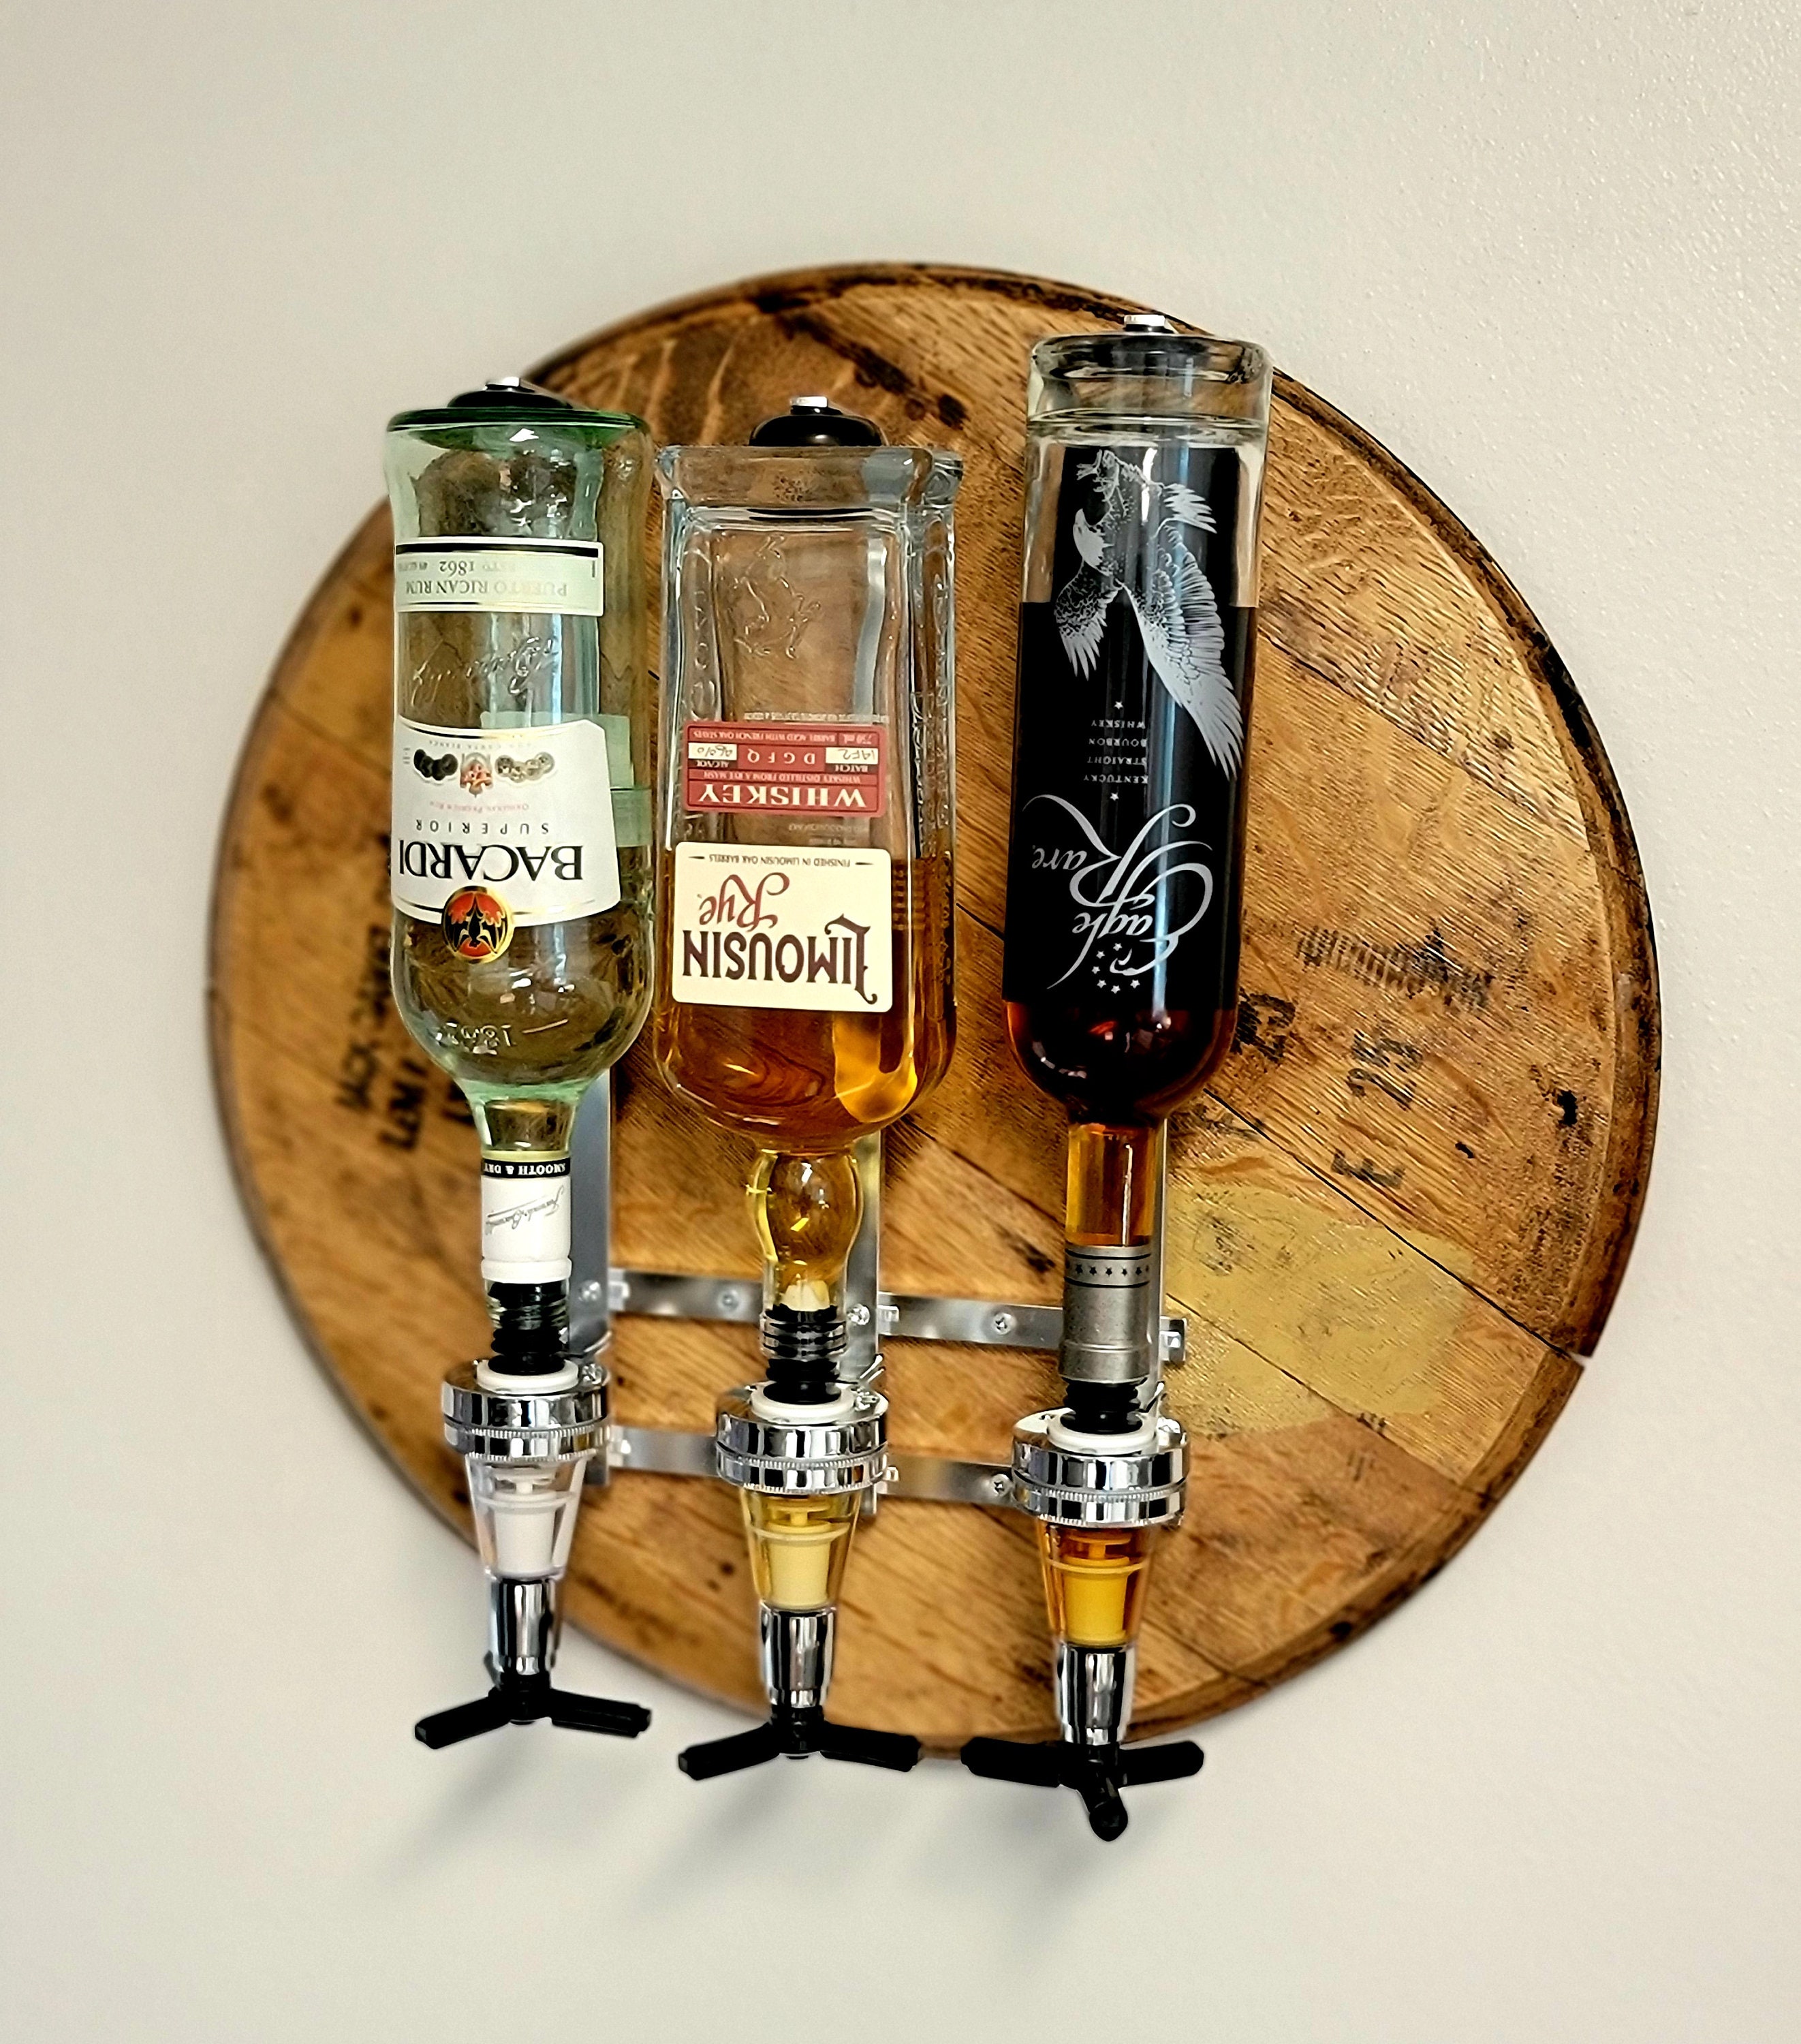 2/4/6-Bottle Liquor Dispenser Rotatable Bar Tool, Alcohol Drink